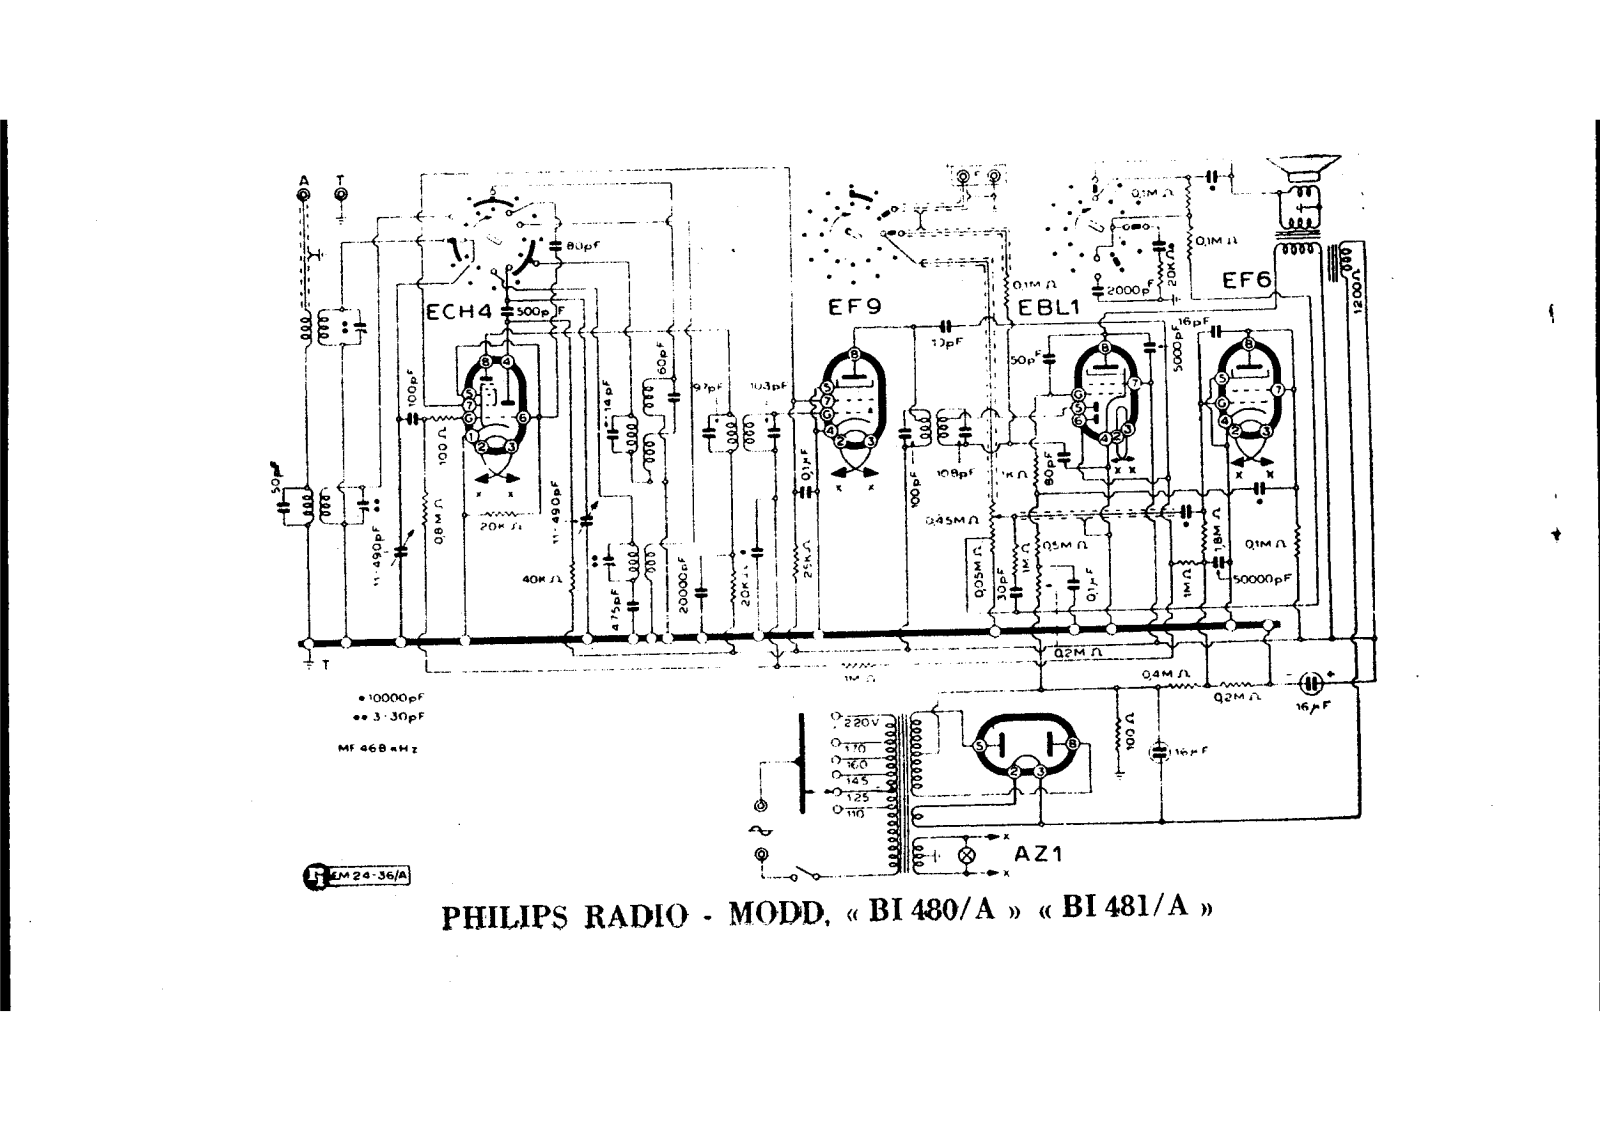 Philips bi480a, bi481a schematic